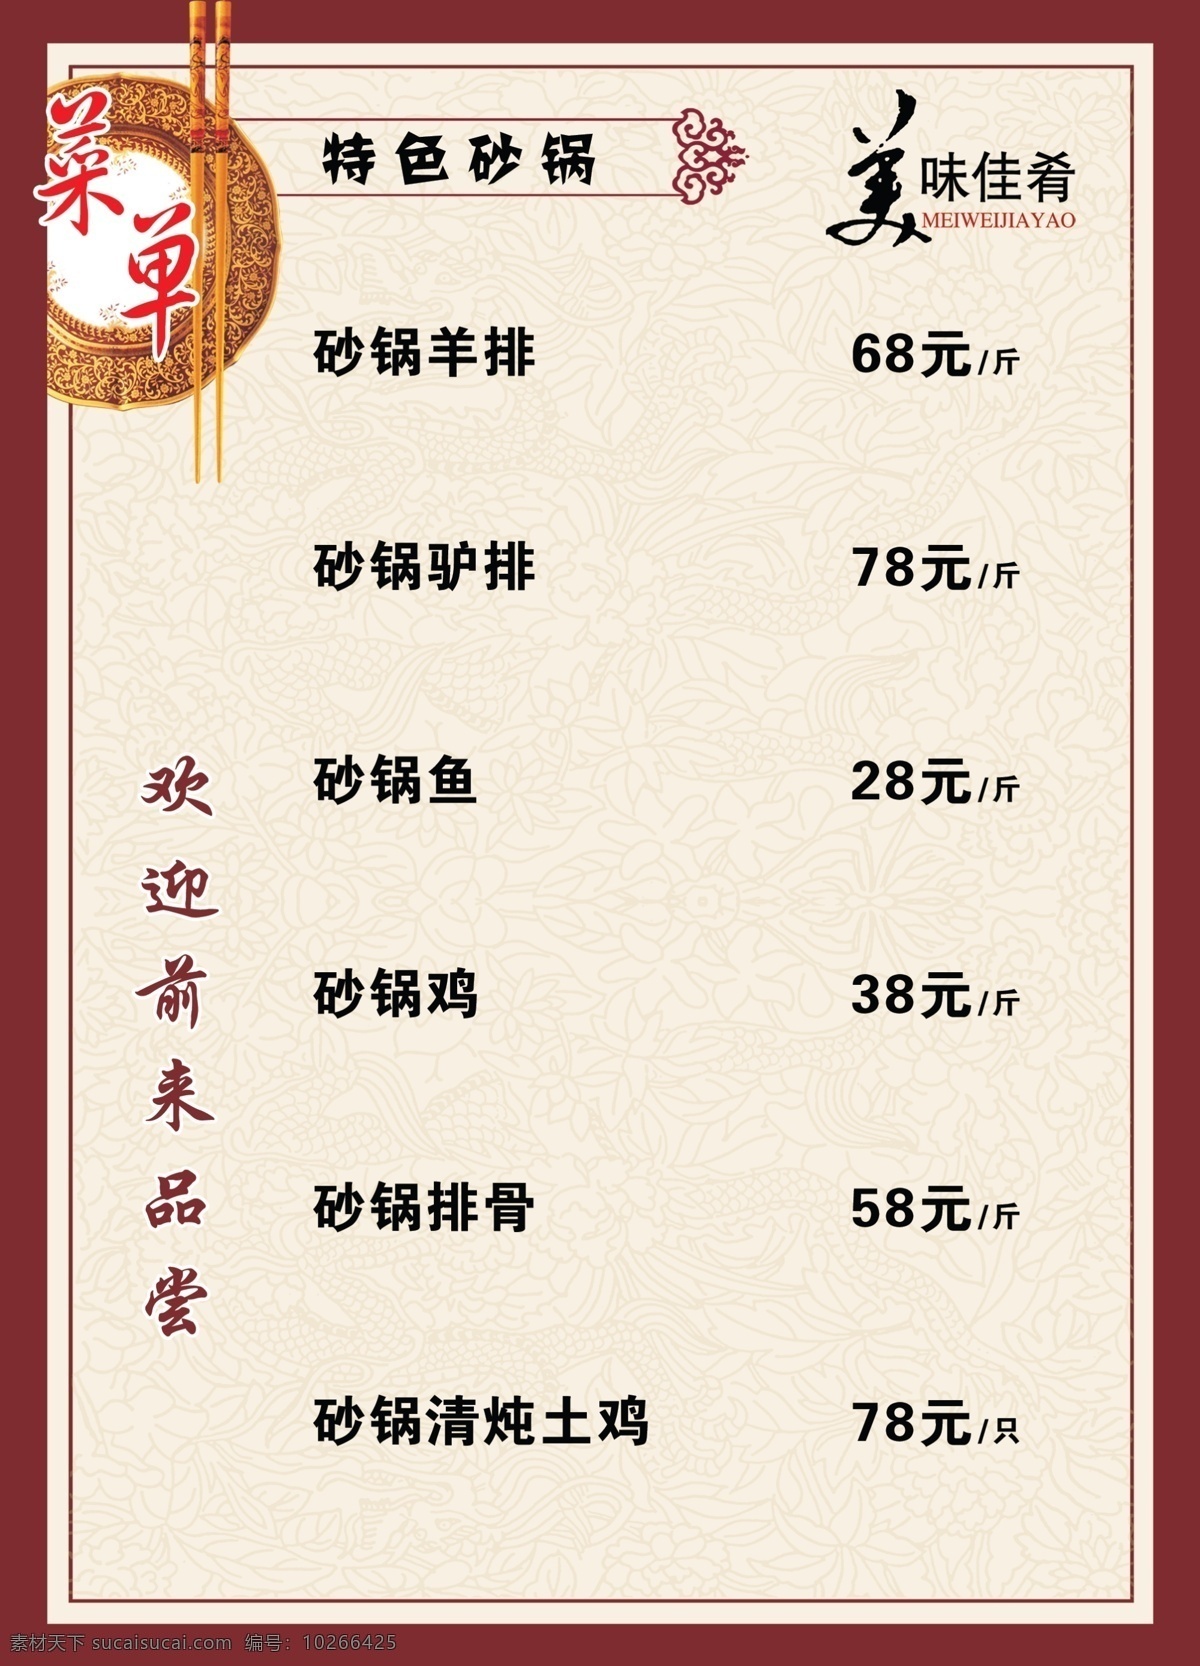 特色 砂锅 菜单 菜谱 标识 一般菜谱样式